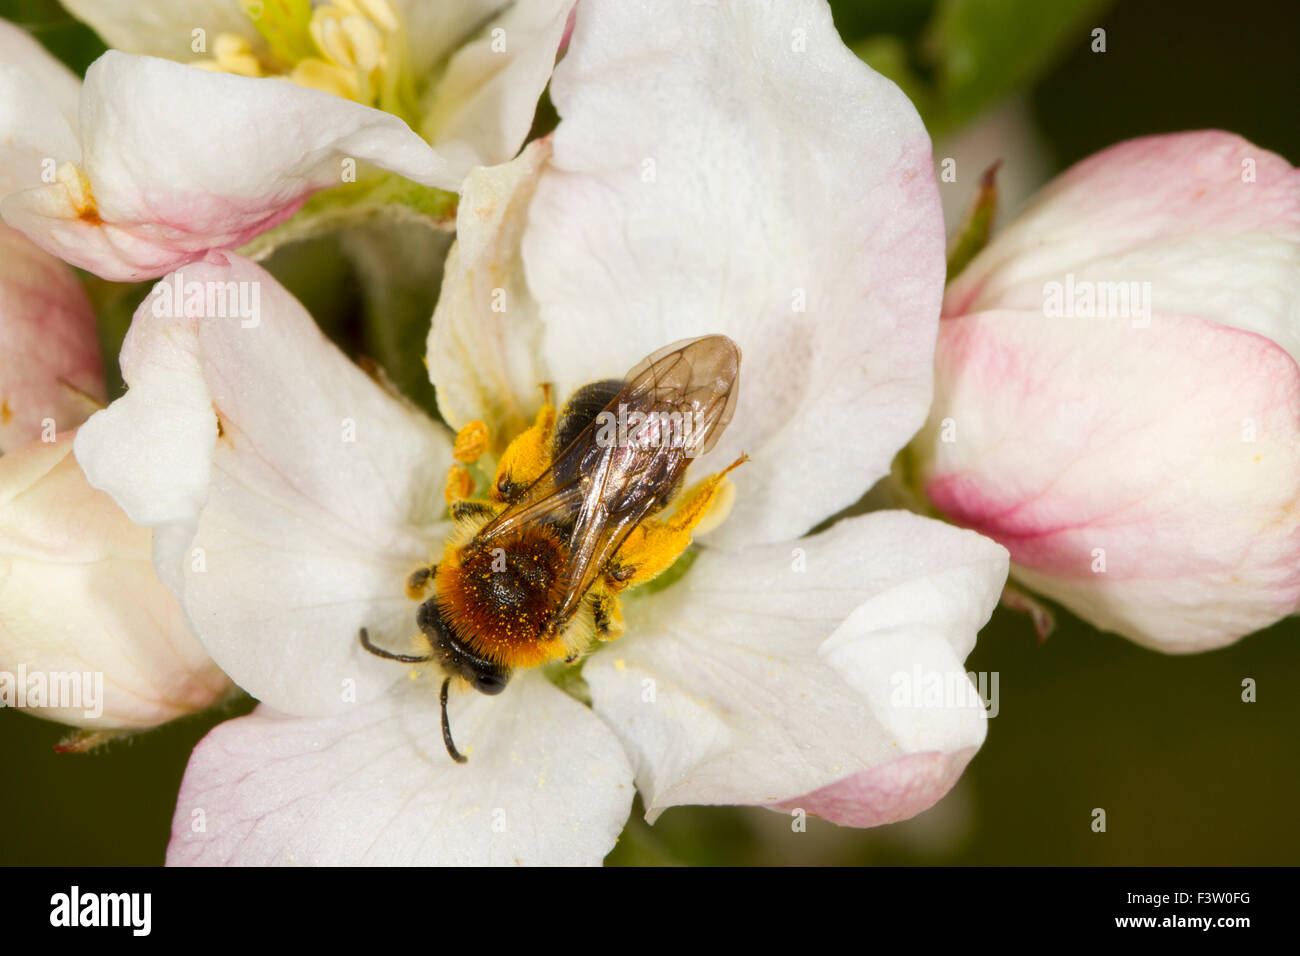 Femmina Data Mining precoce Bee (Andrena haemorrhoa) femmina adulta di alimentazione e di impollinazione del fiore coltivate apple (malus domestica). Foto Stock